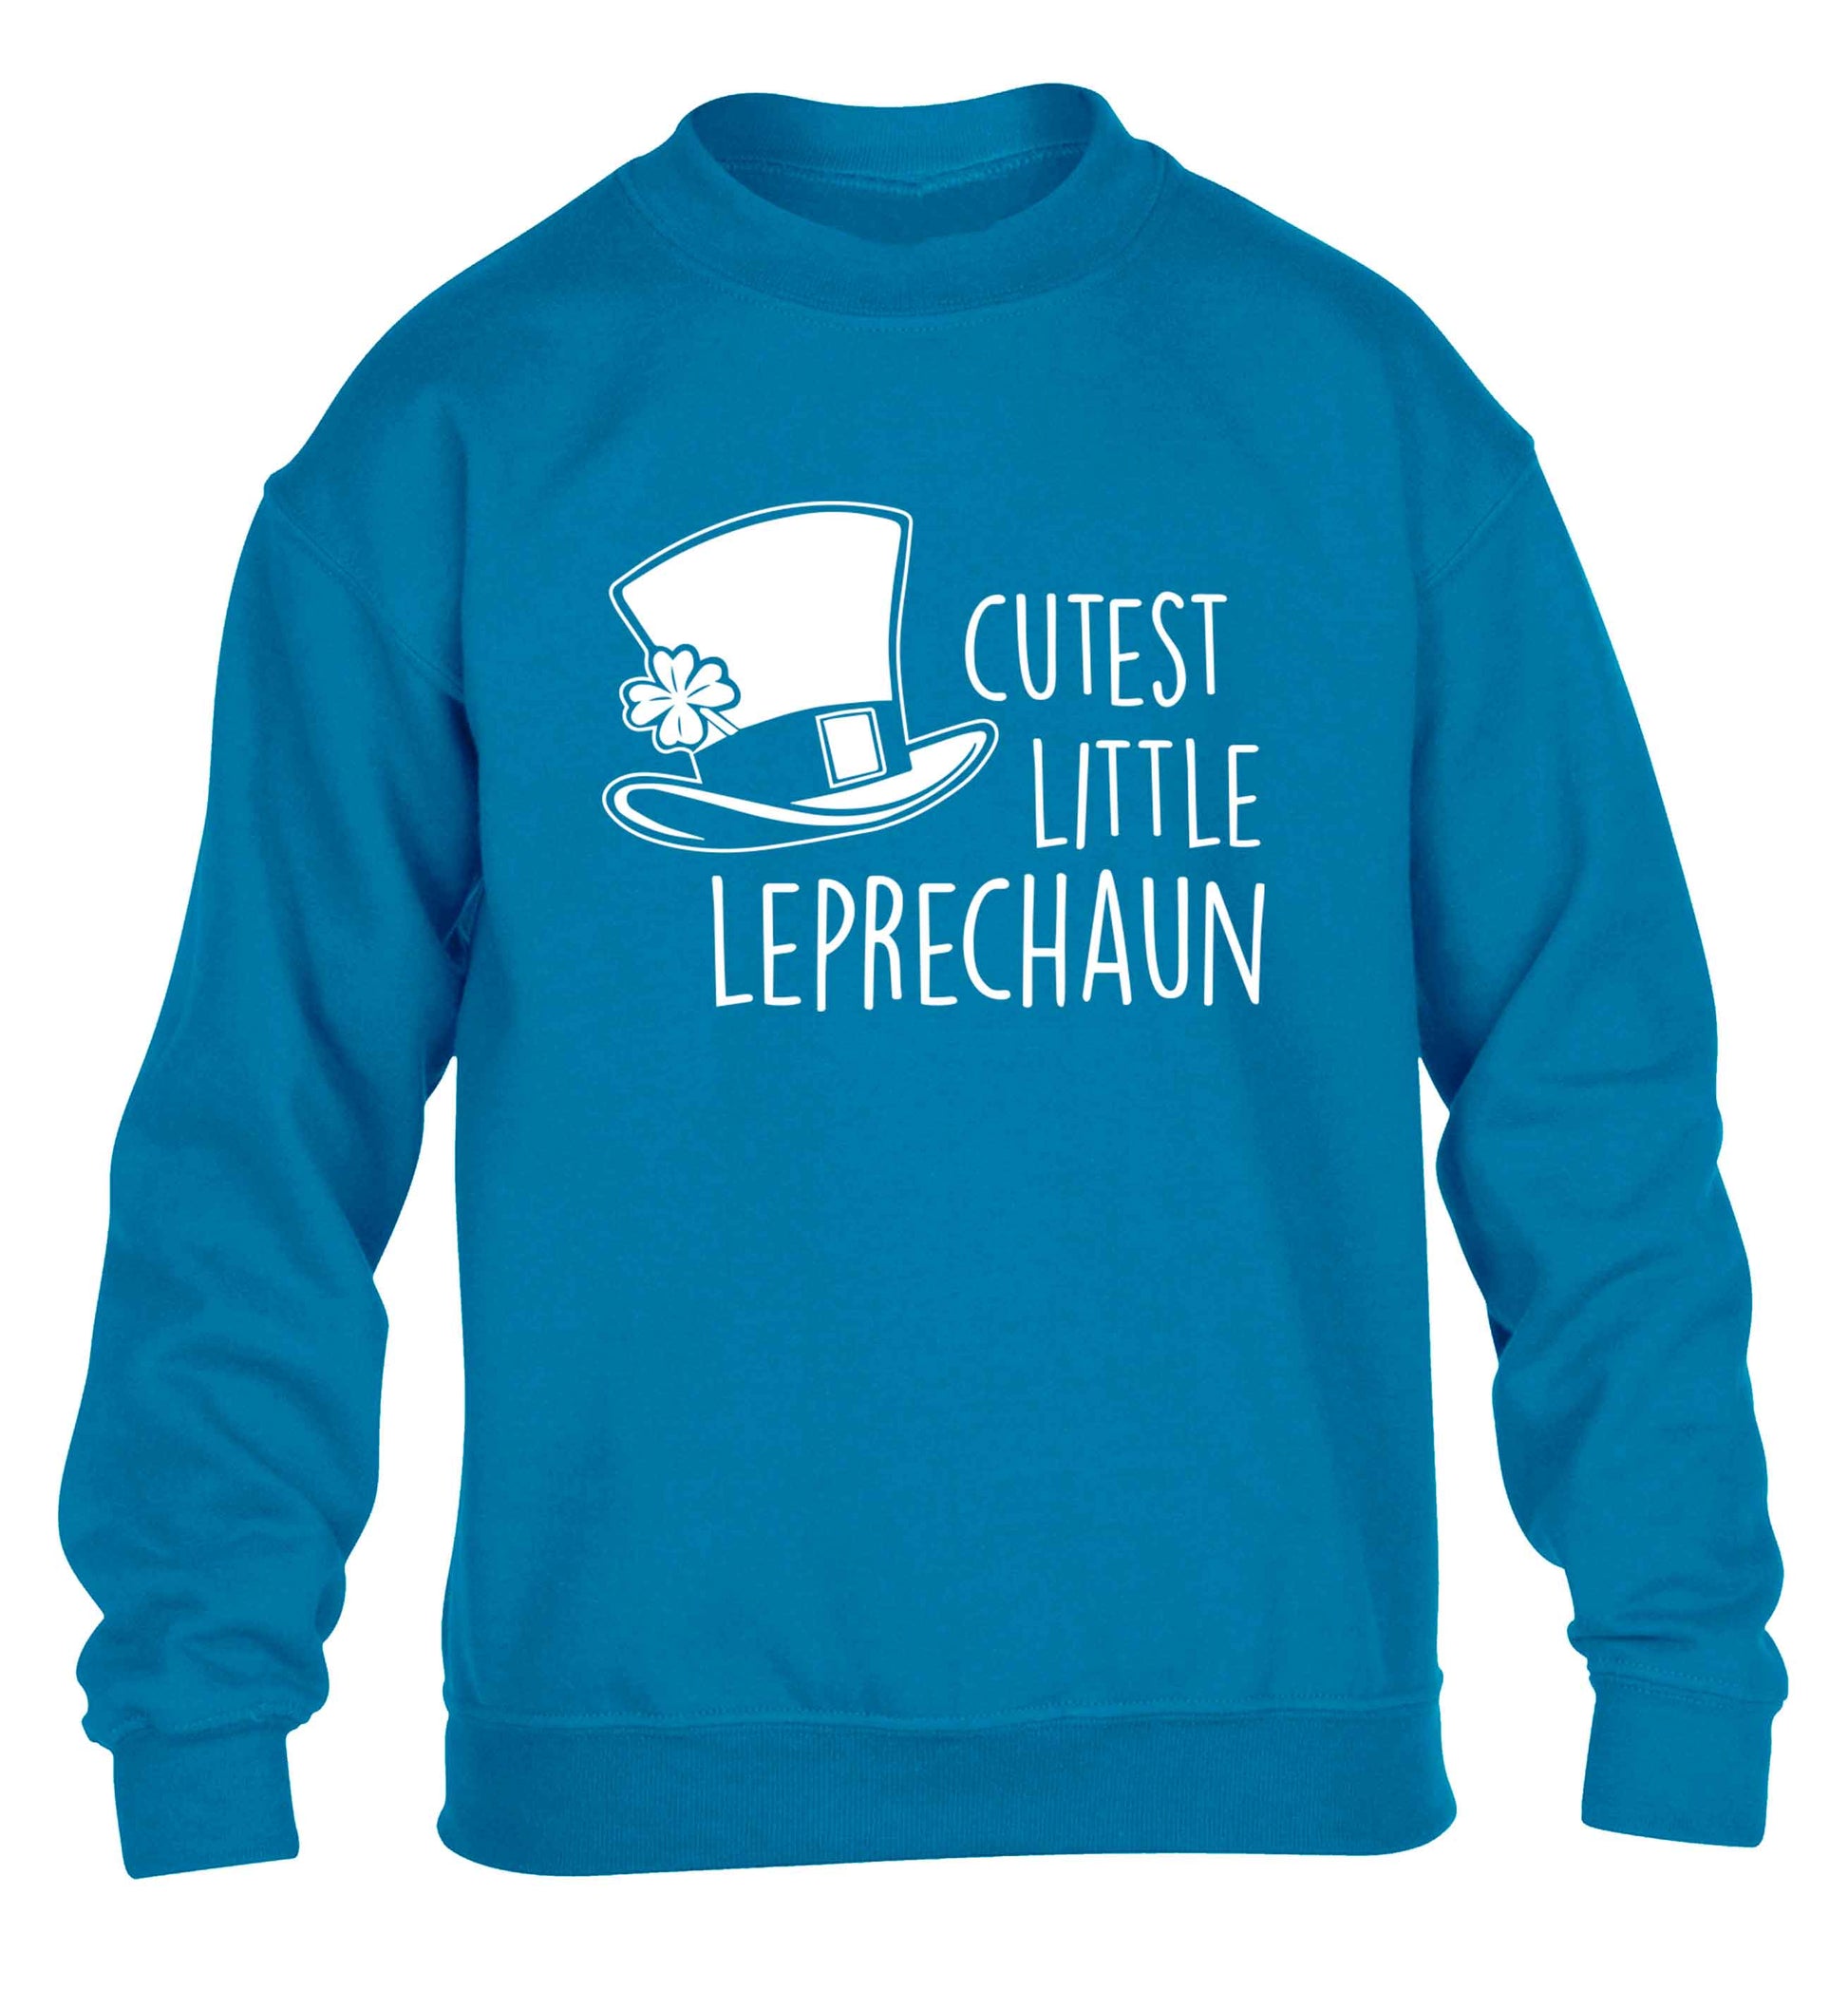 Cutest little leprechaun children's blue sweater 12-13 Years